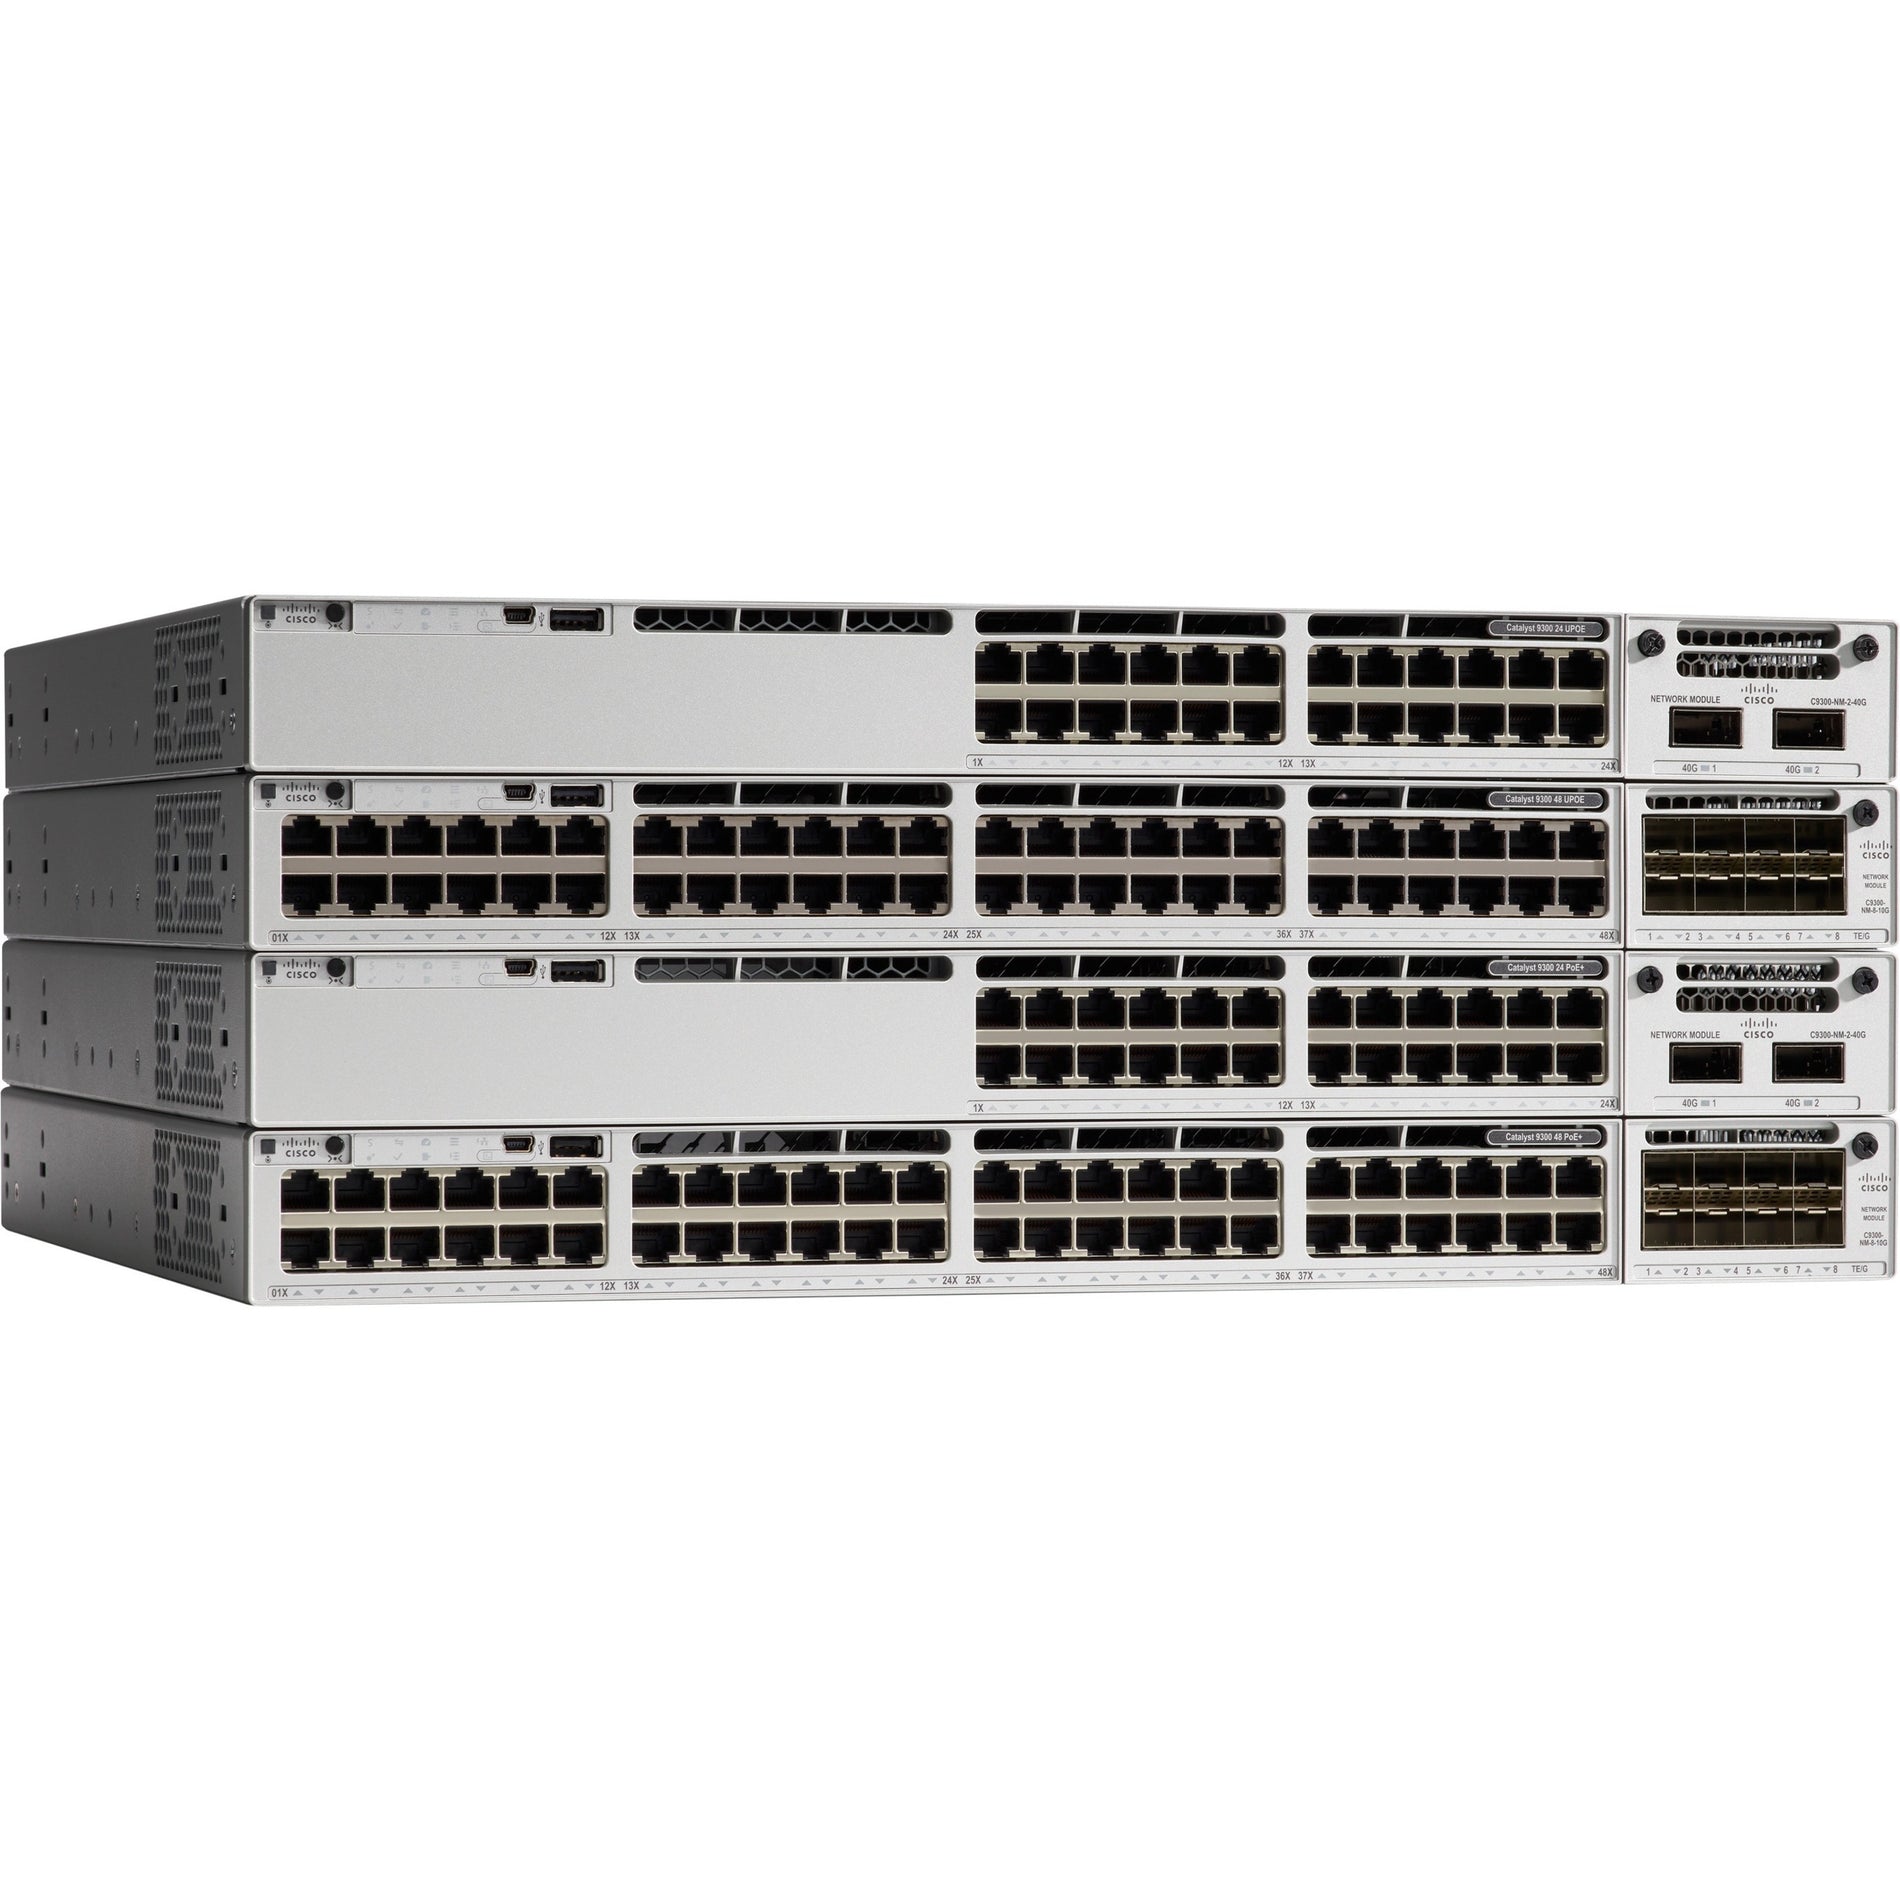 سيسكو سي 9300-24 تي-اي كاتاليست 9300 24-يمنع منفذ بيانات فقط، شبكة أساسيات التبديل الإيثرنت